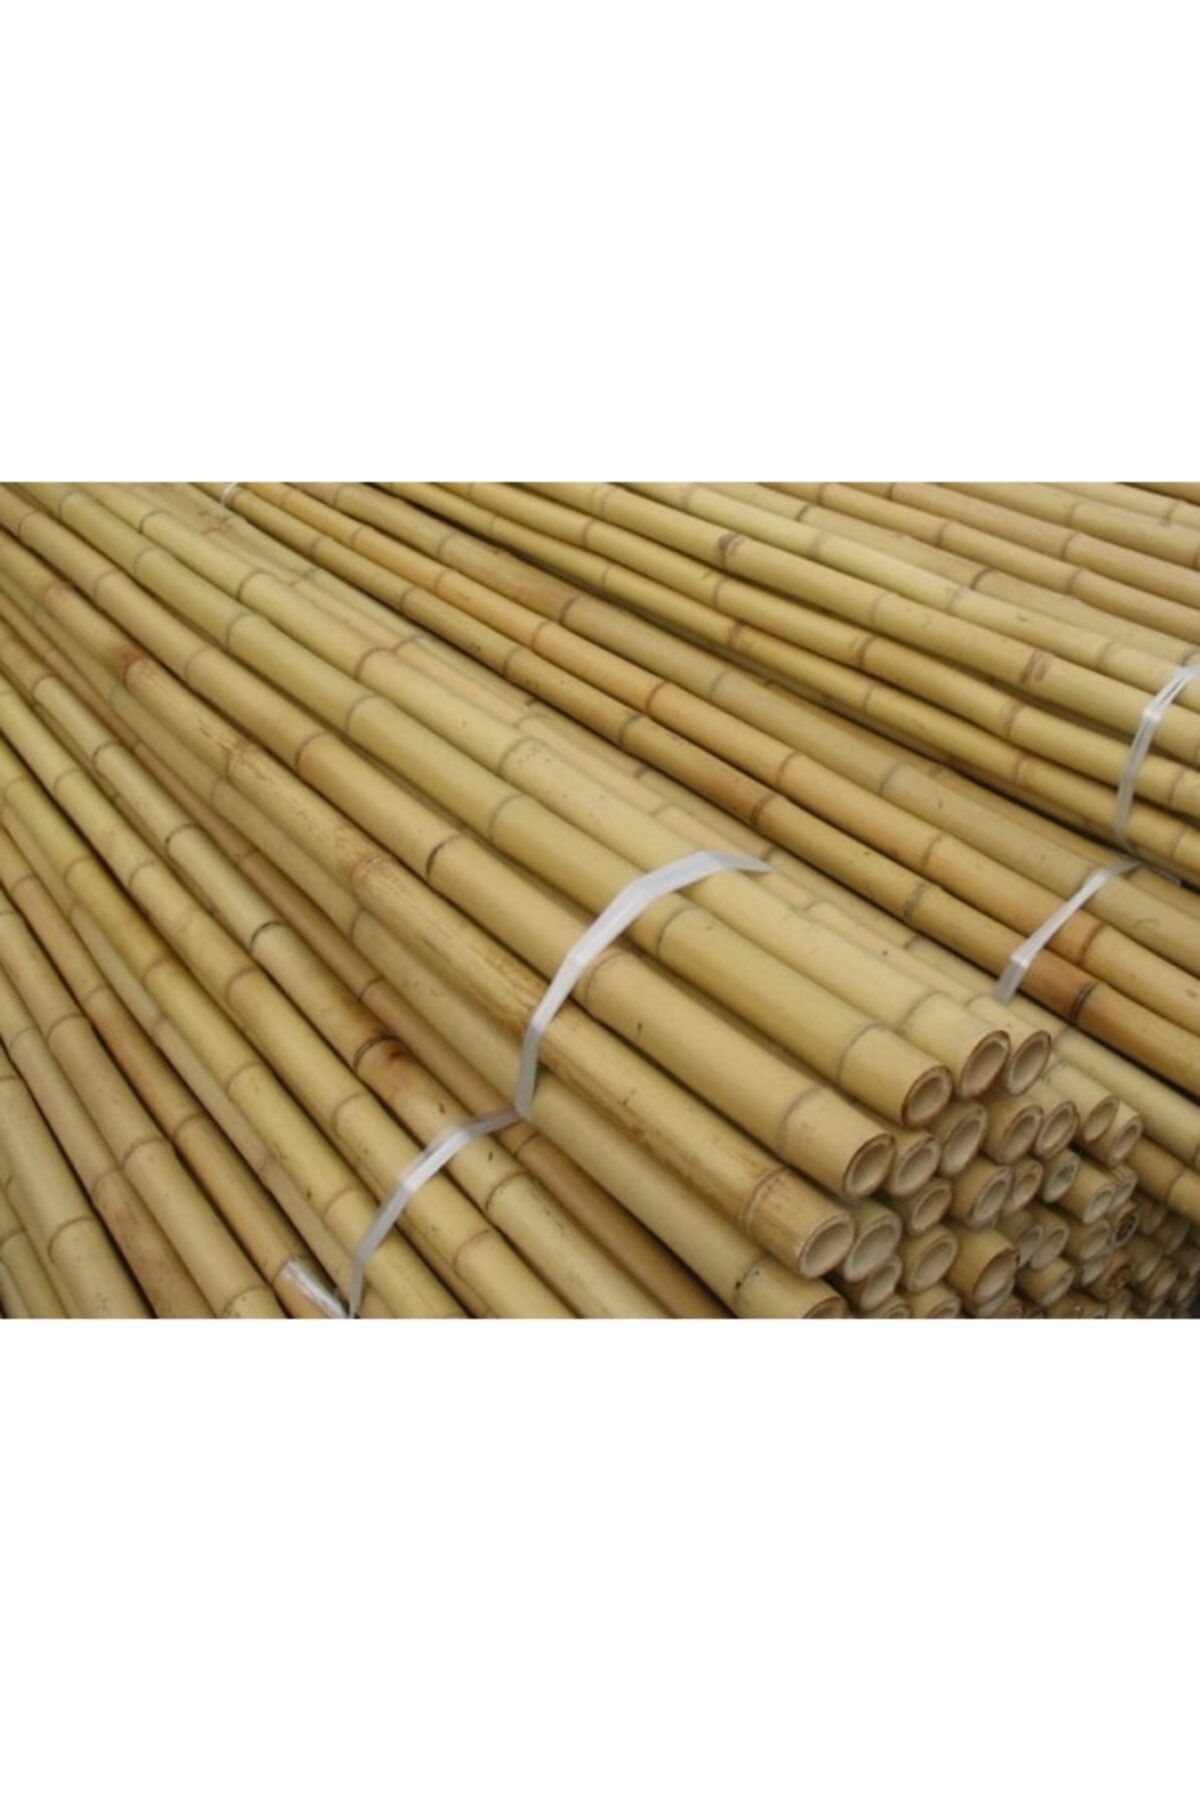 UZAY BAHÇESİ Gerçek Bambu 60 Cm 8-10 Mm Bambu Çubuk/ Bitki Destek Çubuğu 5 Adet